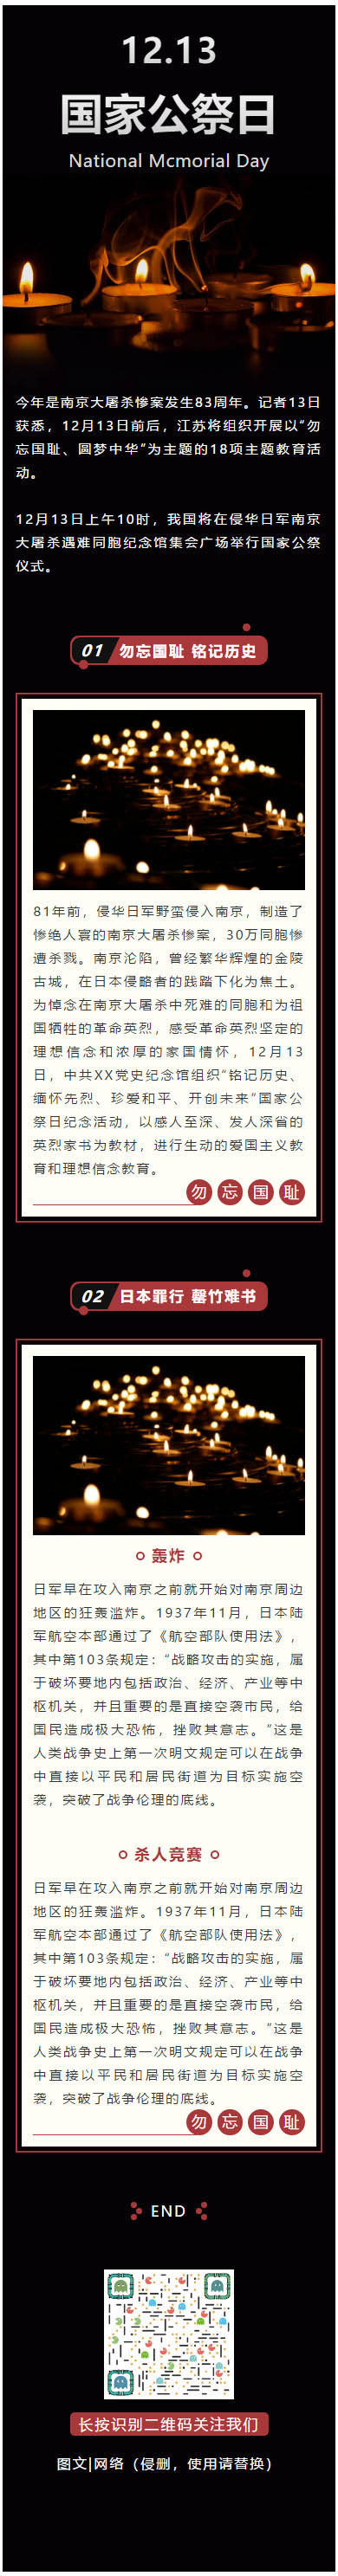 12.13国家公祭日南京大屠杀微信公众号推文素材推送图文模板